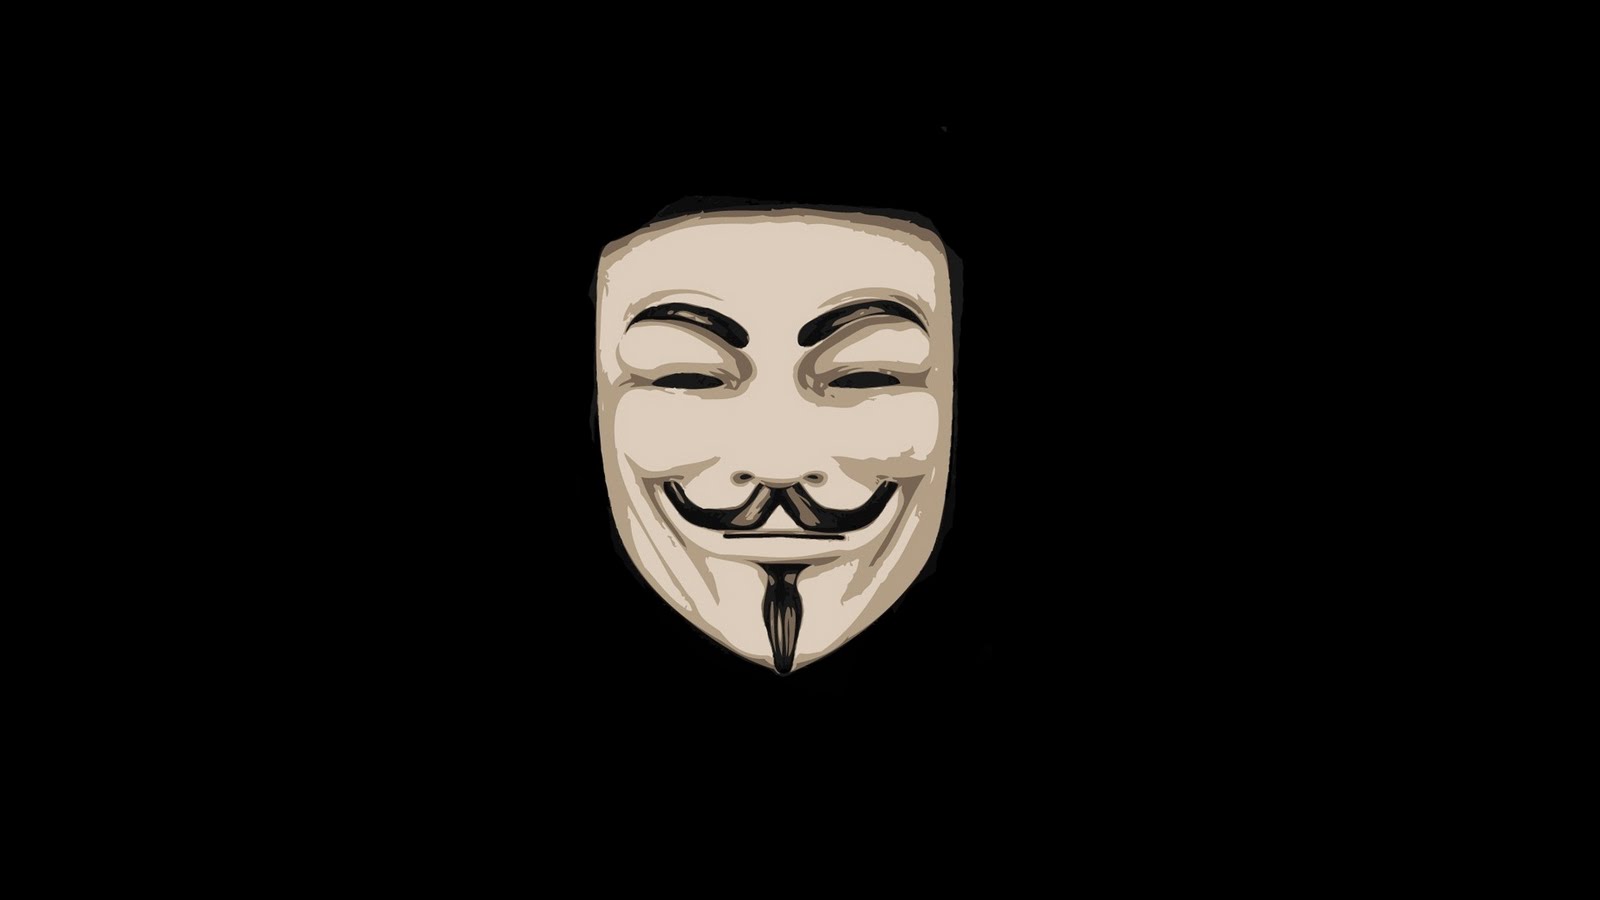 Wallpaper Website Script V For Vendetta